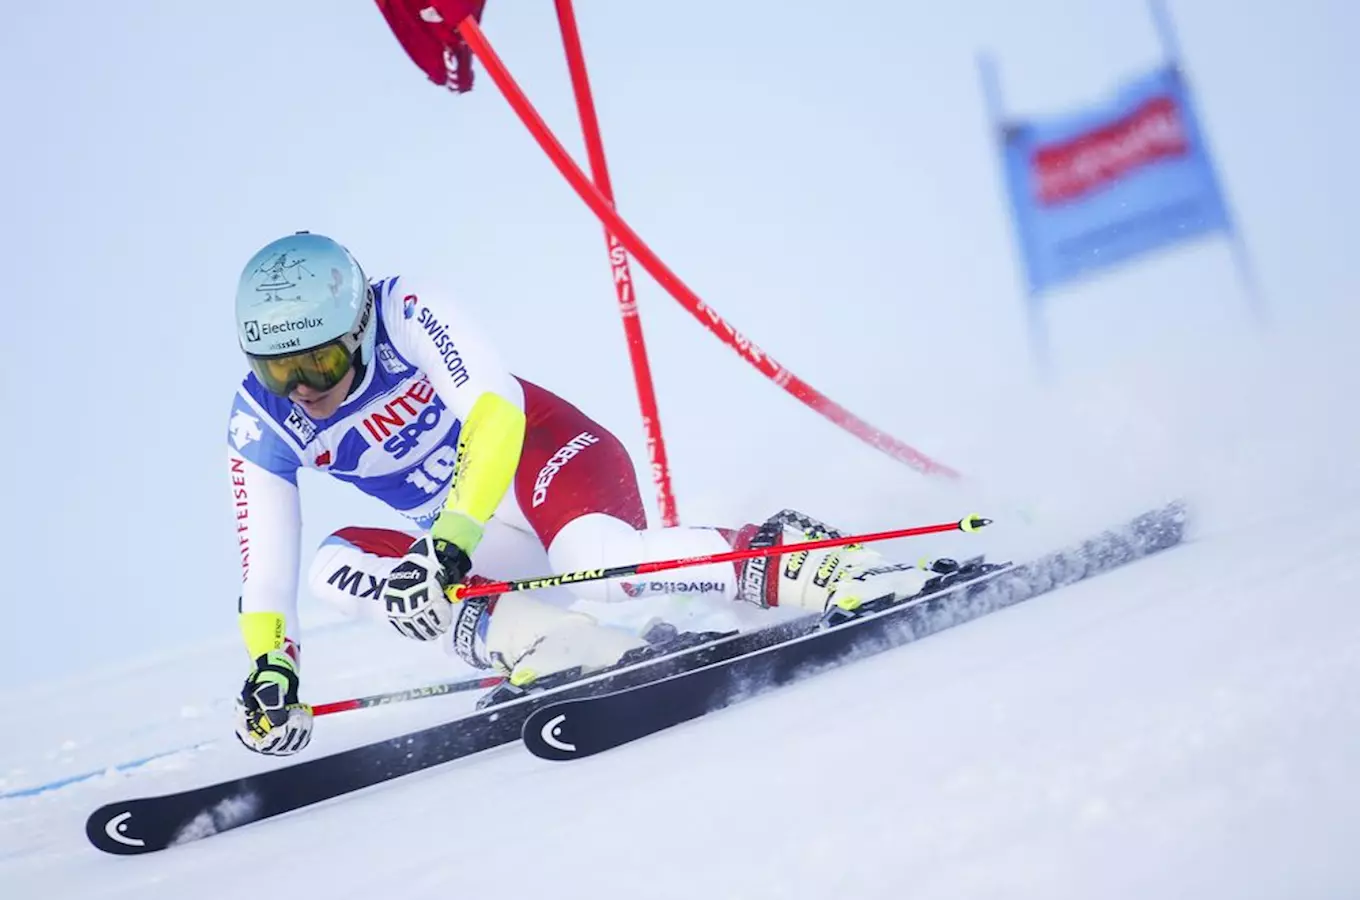 Fis Ski World Cup – Světový pohár žen 2019 ve Špindlerově Mlýně